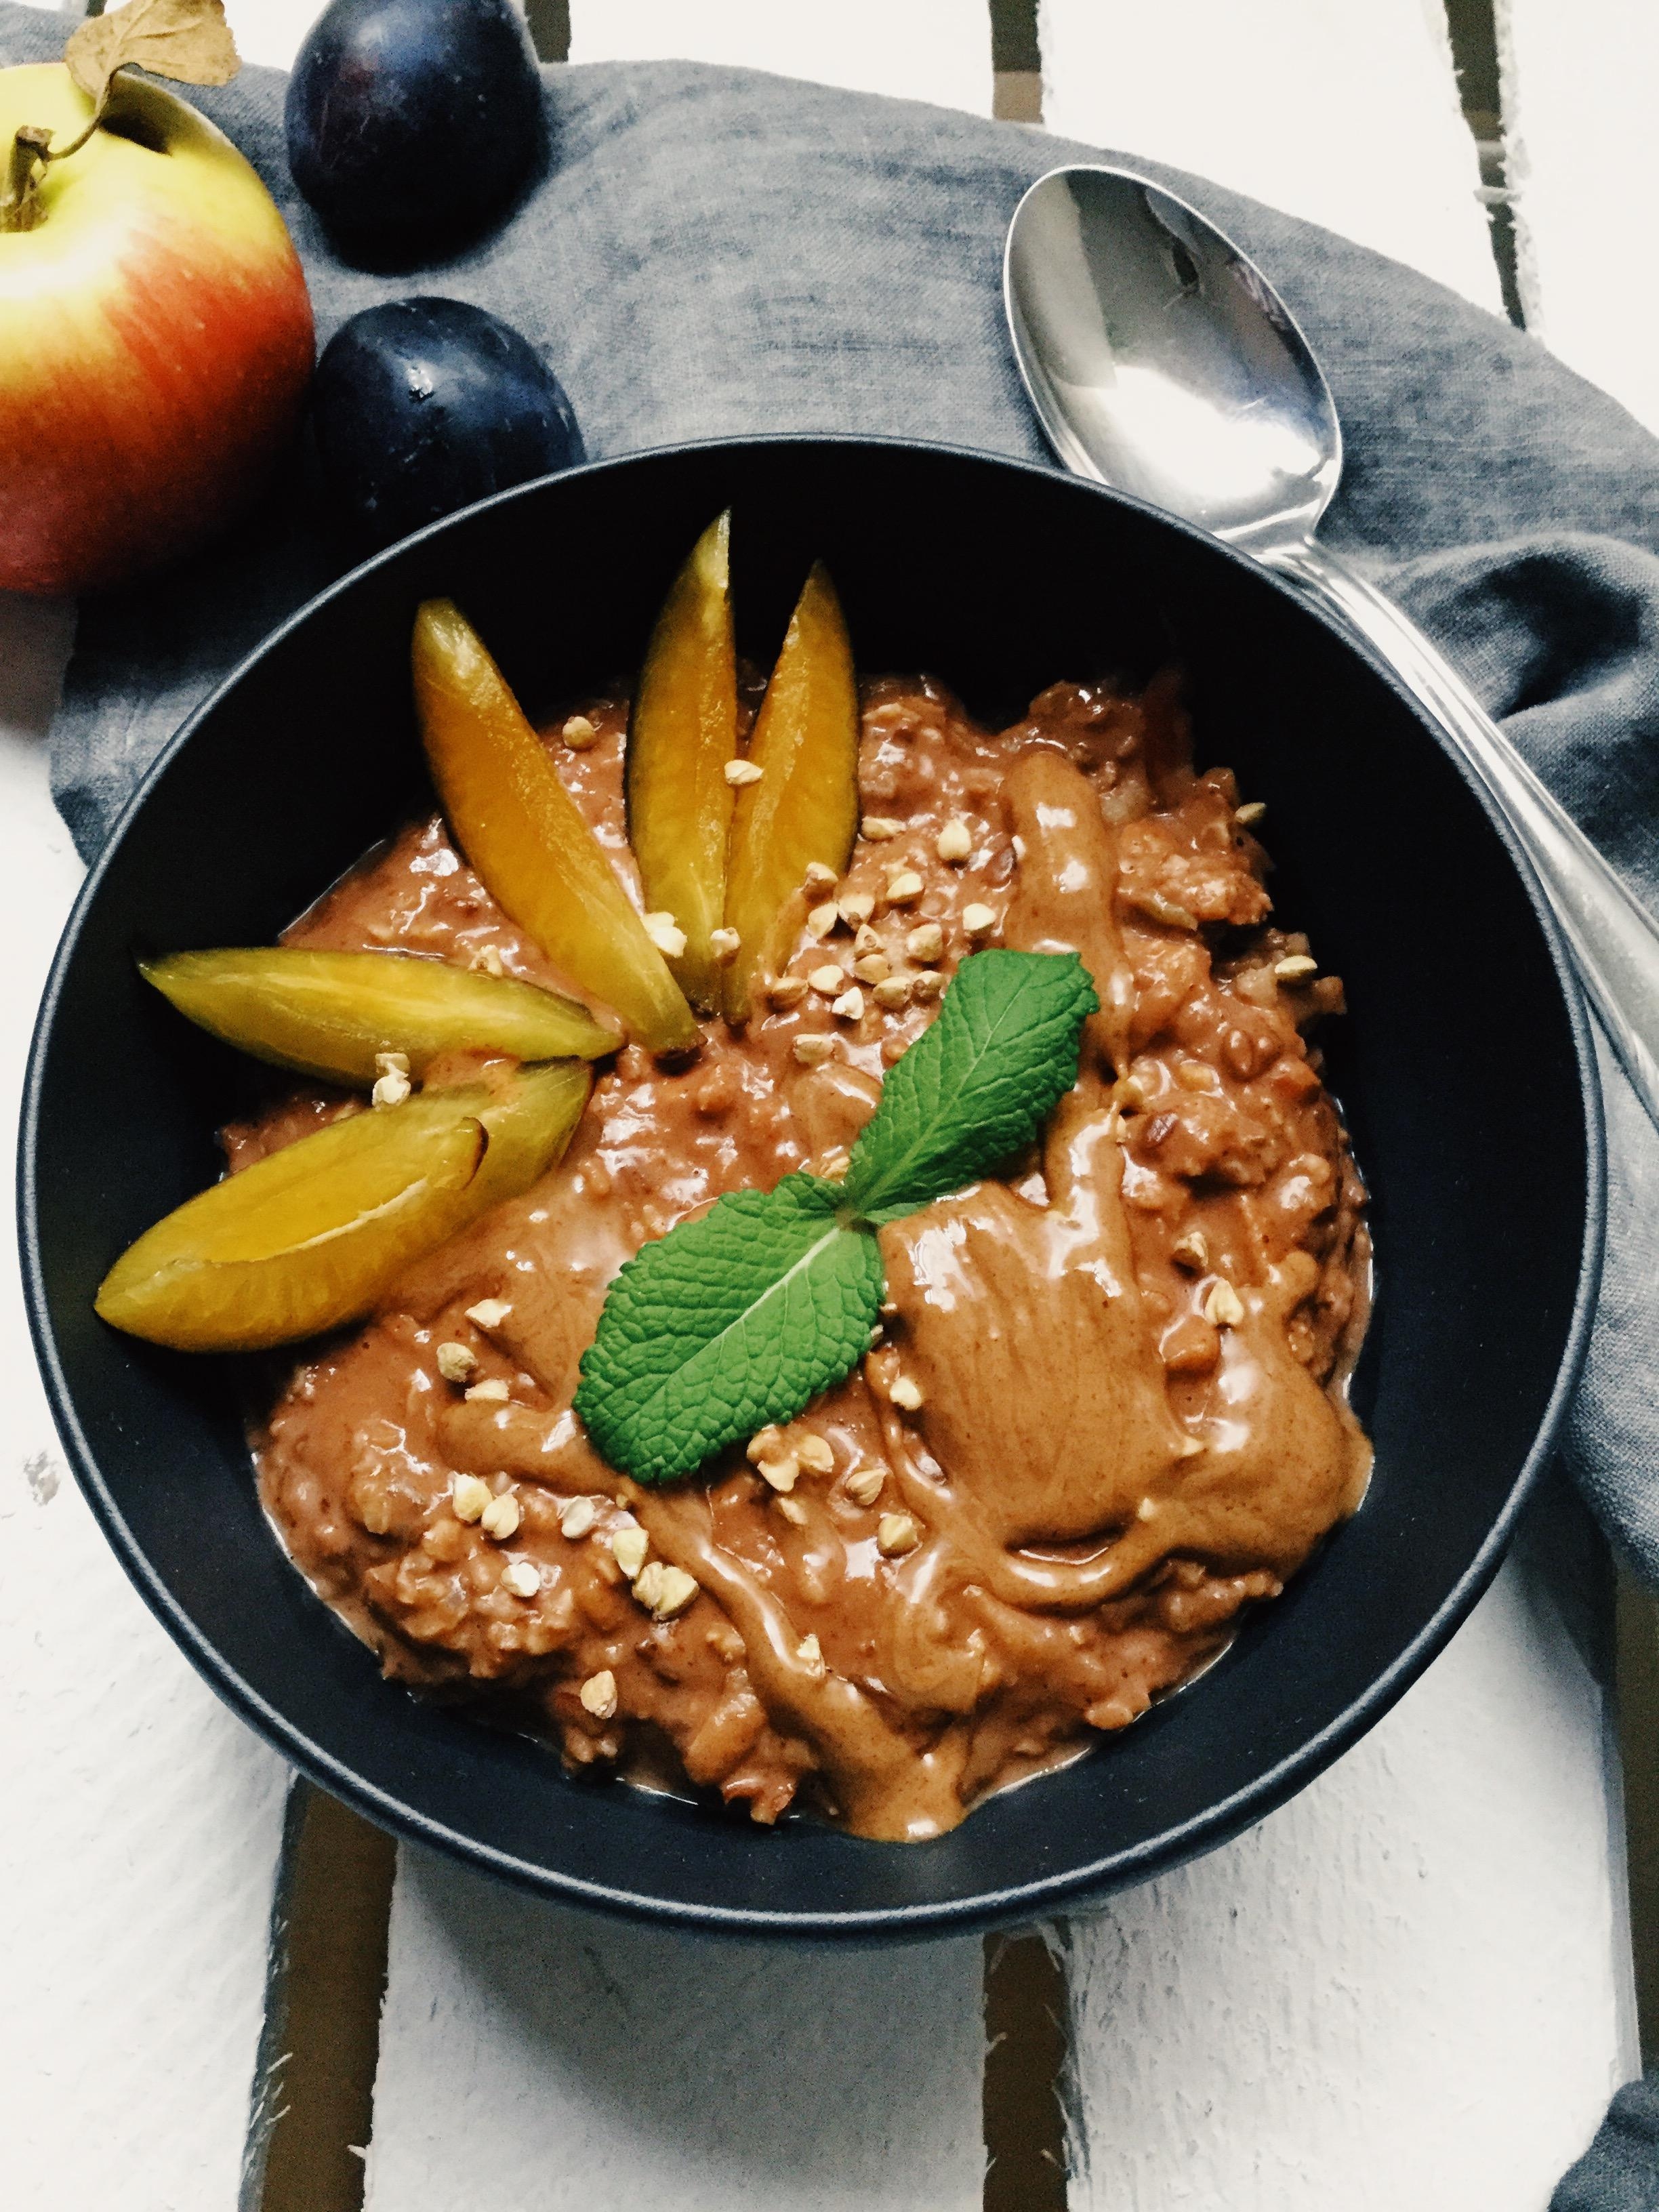 Super schokoladiges Apfel-Porridge 😋 perfekt bei dem herbstlichen Wetter! #foodlove #vegan #gesund #frühstück #porridge